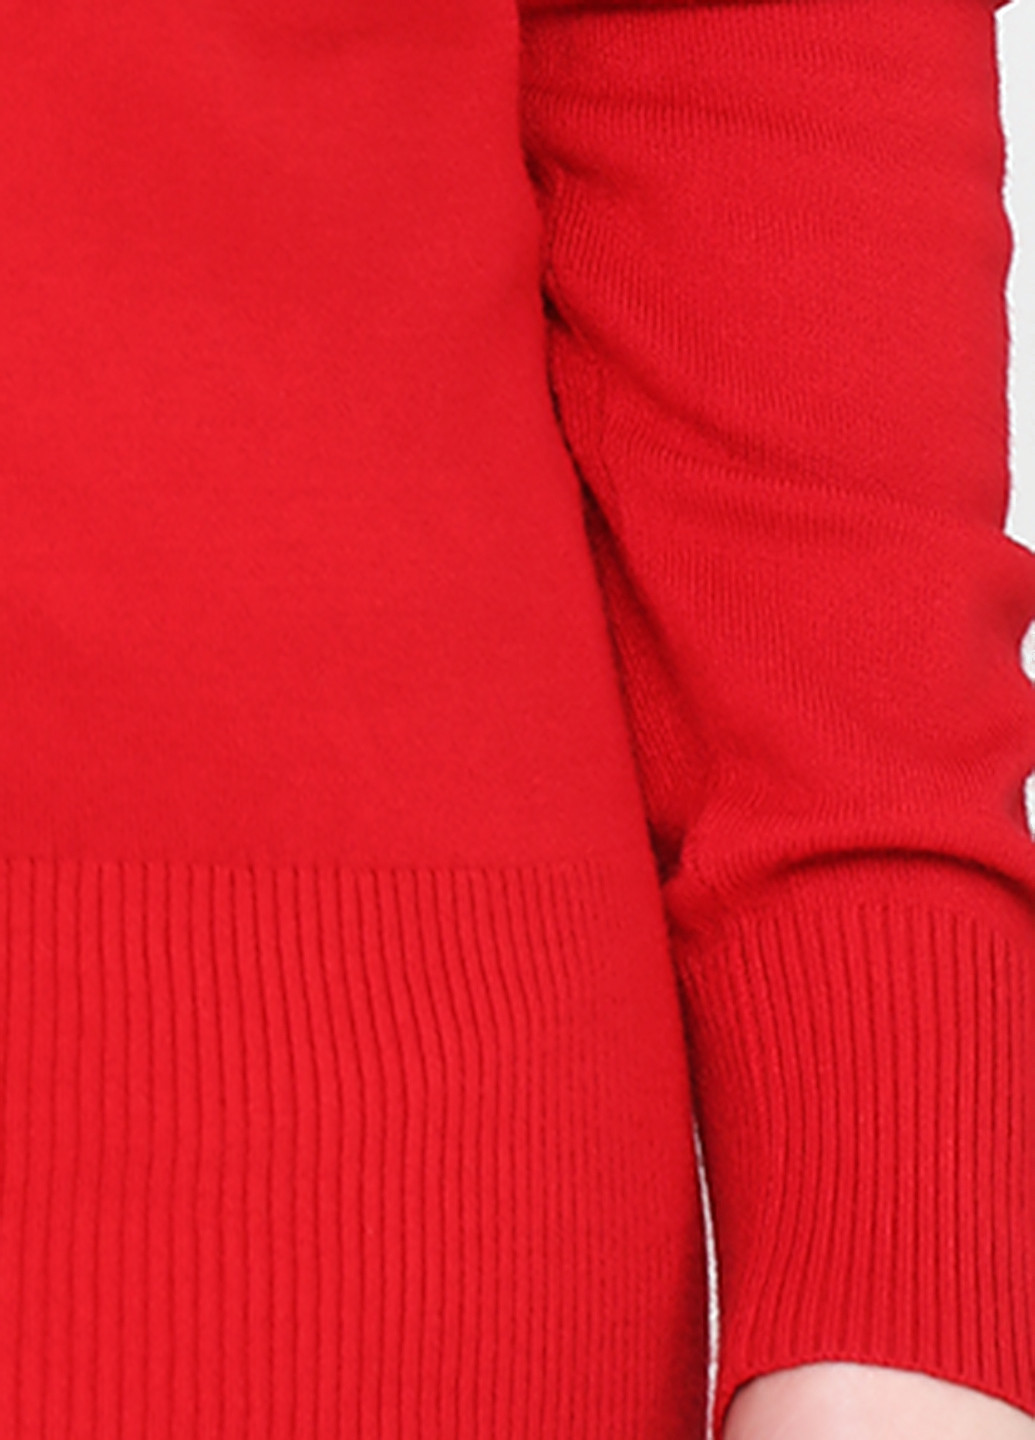 Красный демисезонный пуловер пуловер Apostrophe